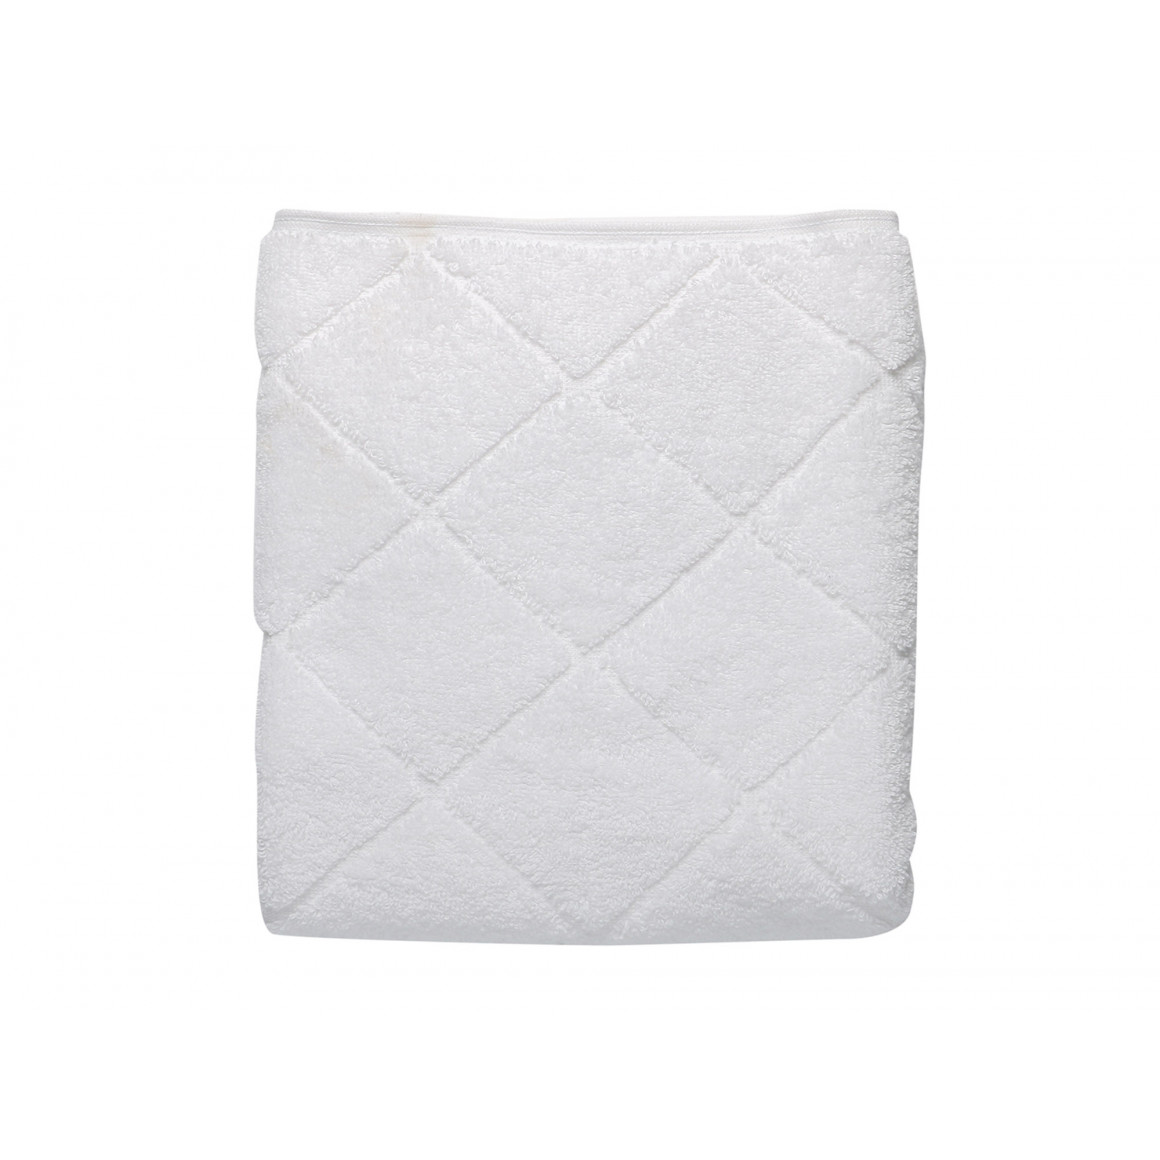 полотенце для лица RESTFUL WHITE 600GSM 50X90